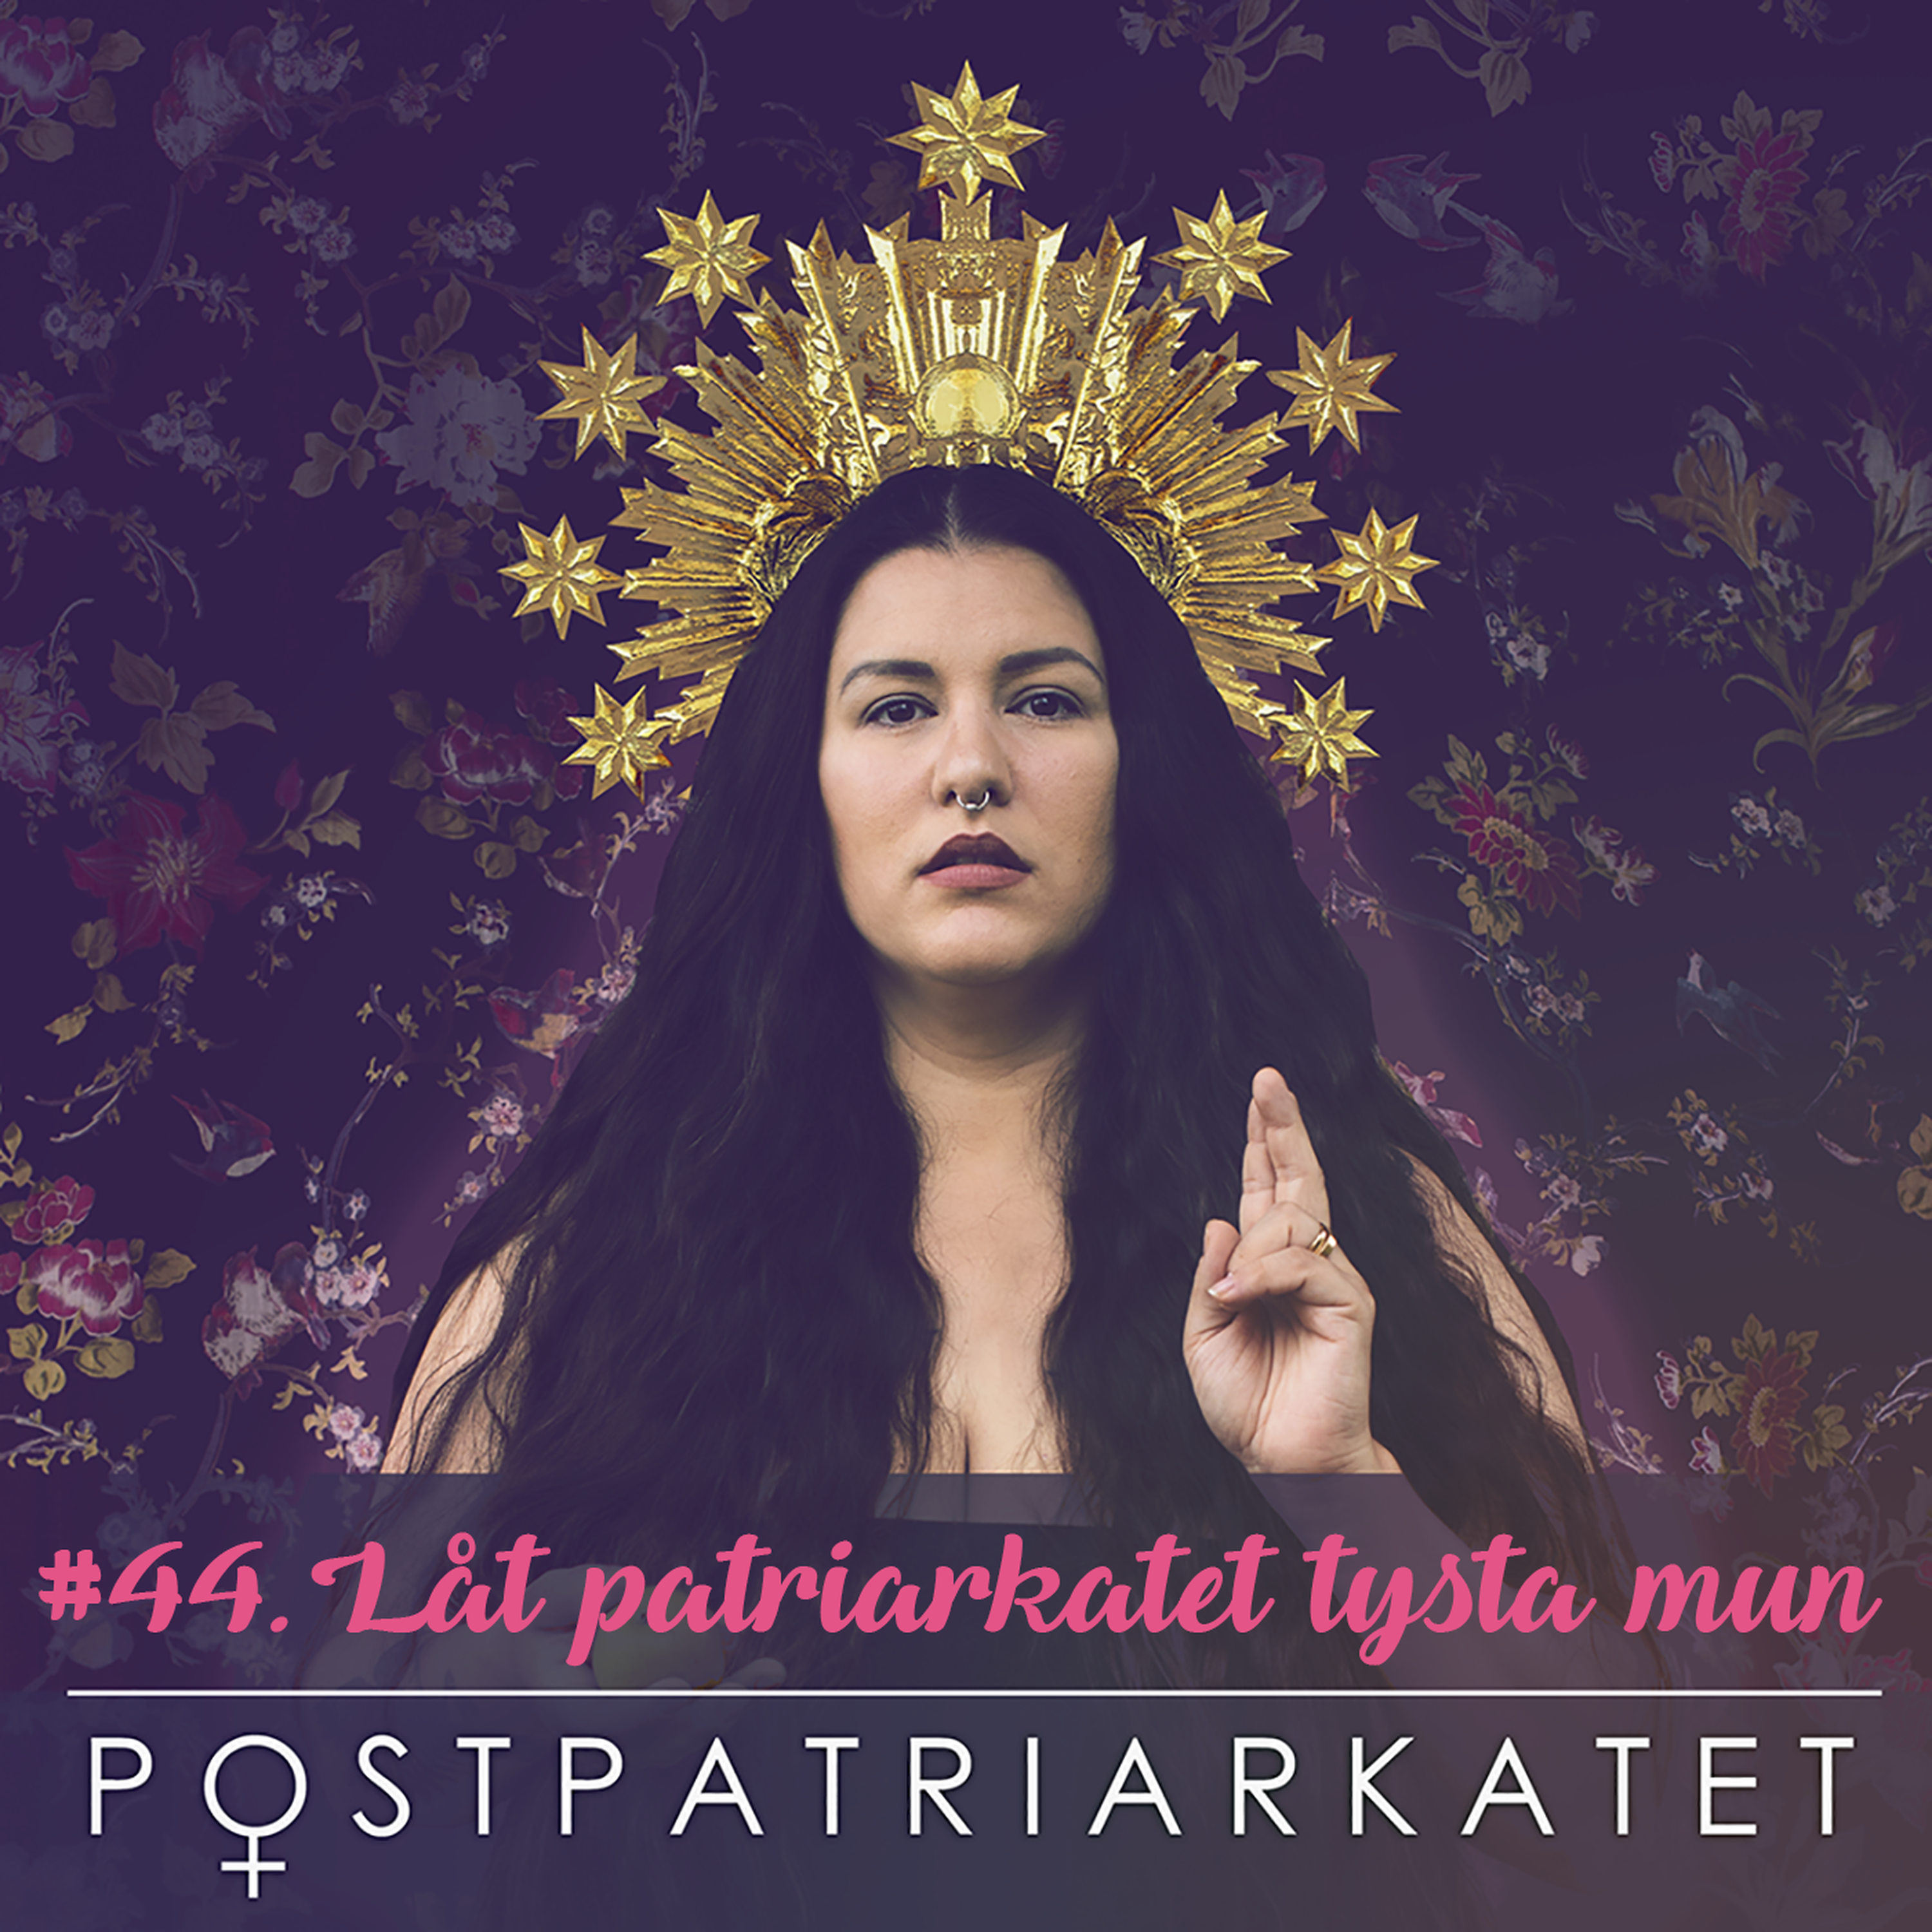 Låt patriarkatet tysta mun - #44